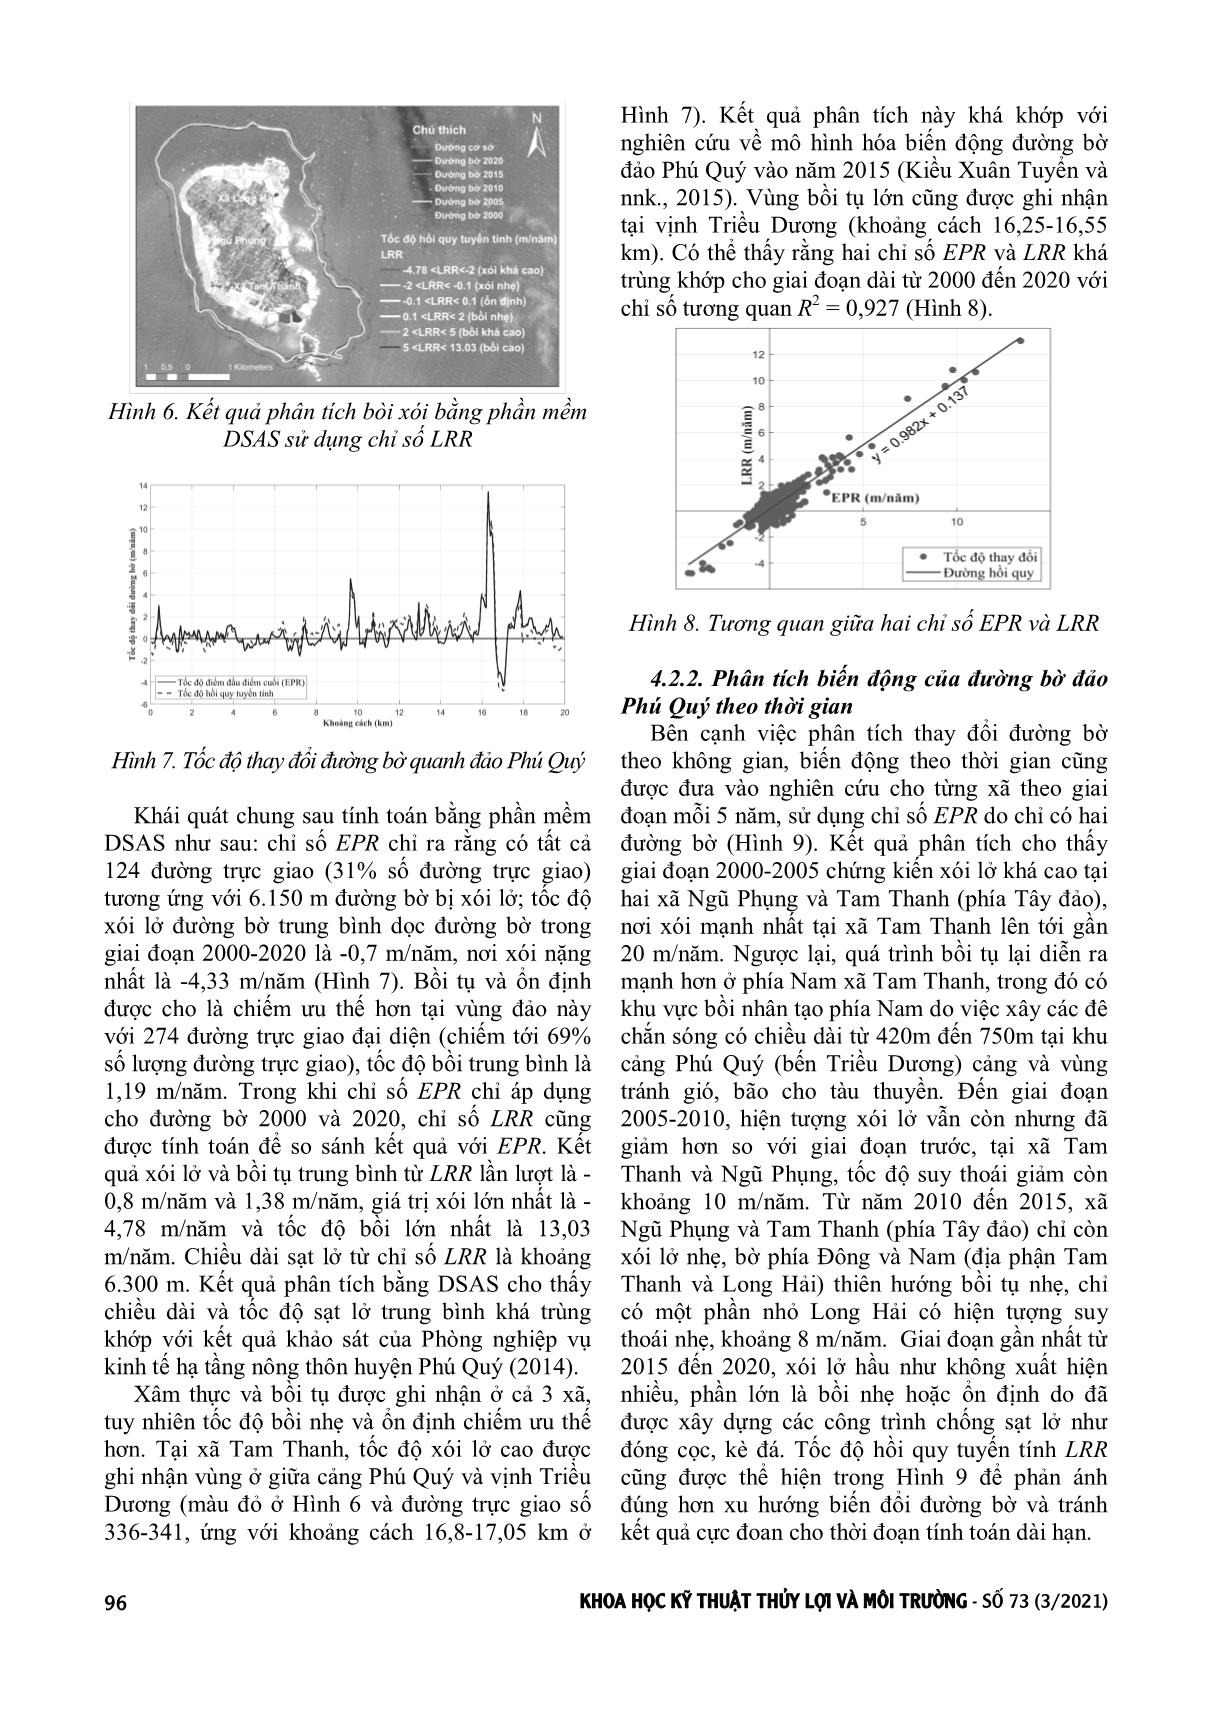 Phân tích biến động của đường bờ đảo Phú Quý sử dụng ảnh viễn thám trên nền google earth engine và phần mềm DSAS trang 5